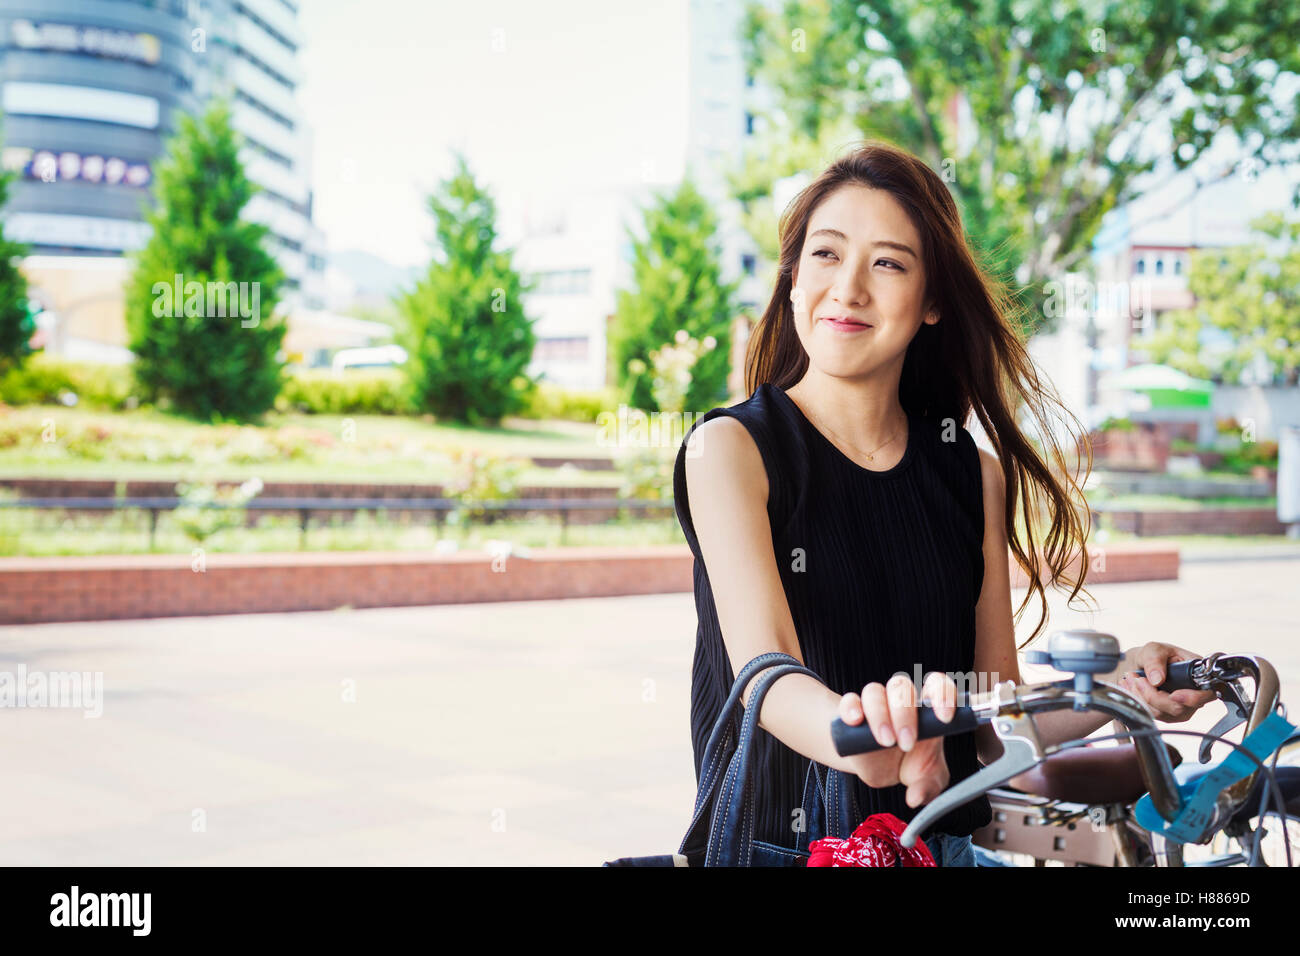 Sorridente giovane donna con capelli lunghi marrone in piedi accanto ad una bicicletta. Foto Stock